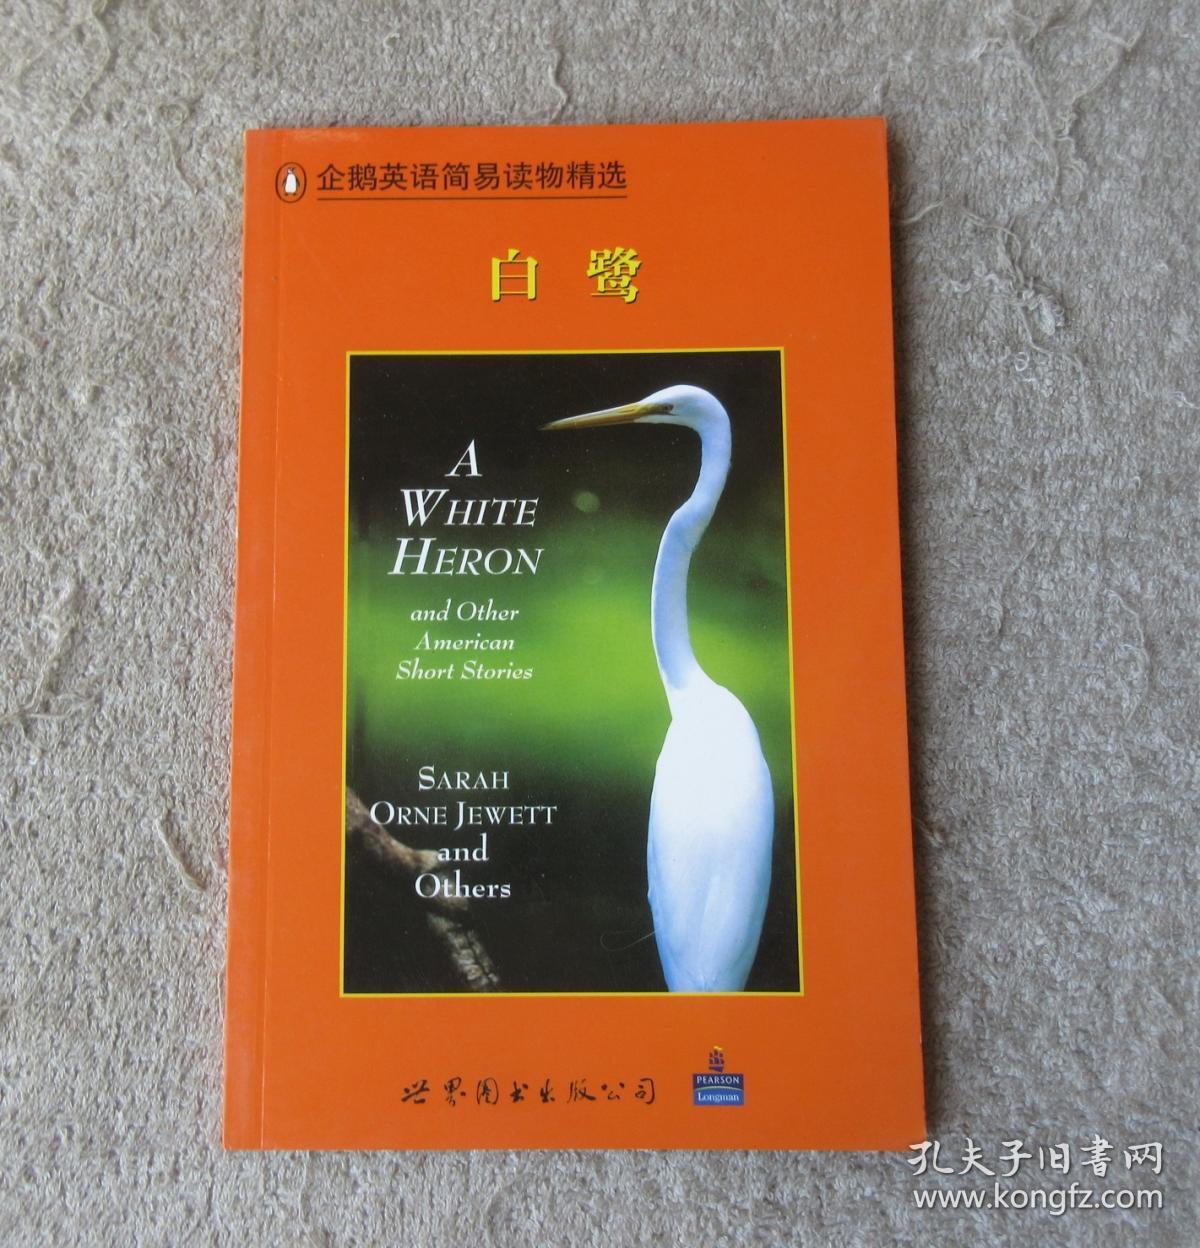 企鹅英语简易读物精选(初三学生):白鹭